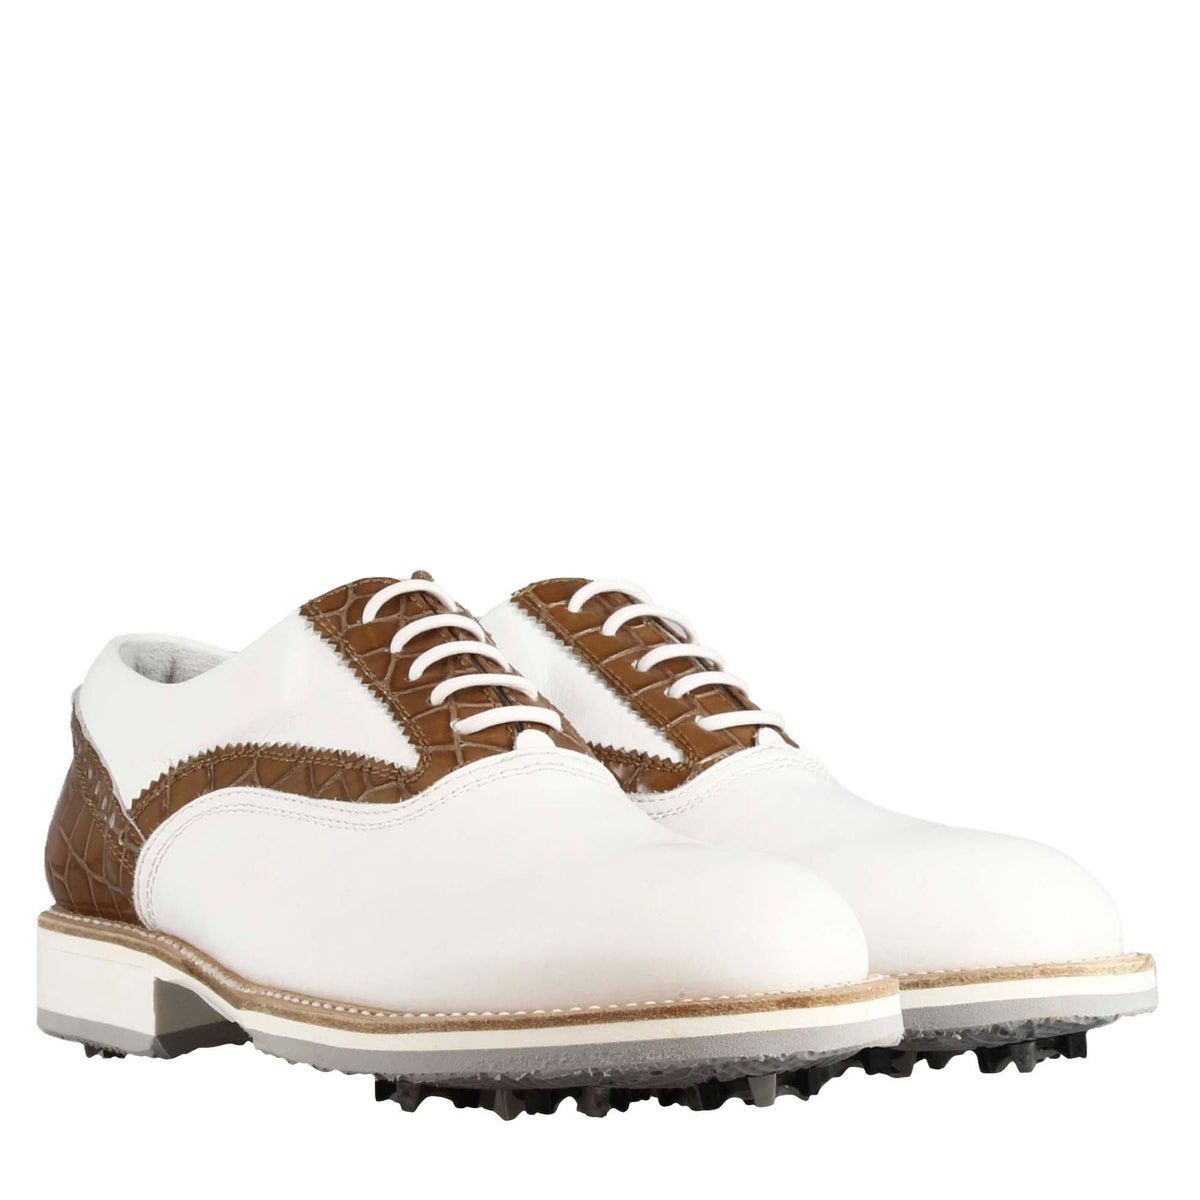 Scarpe da golf artigianali da donna in pelle bianca con dettagli in colore marrone chiaro.